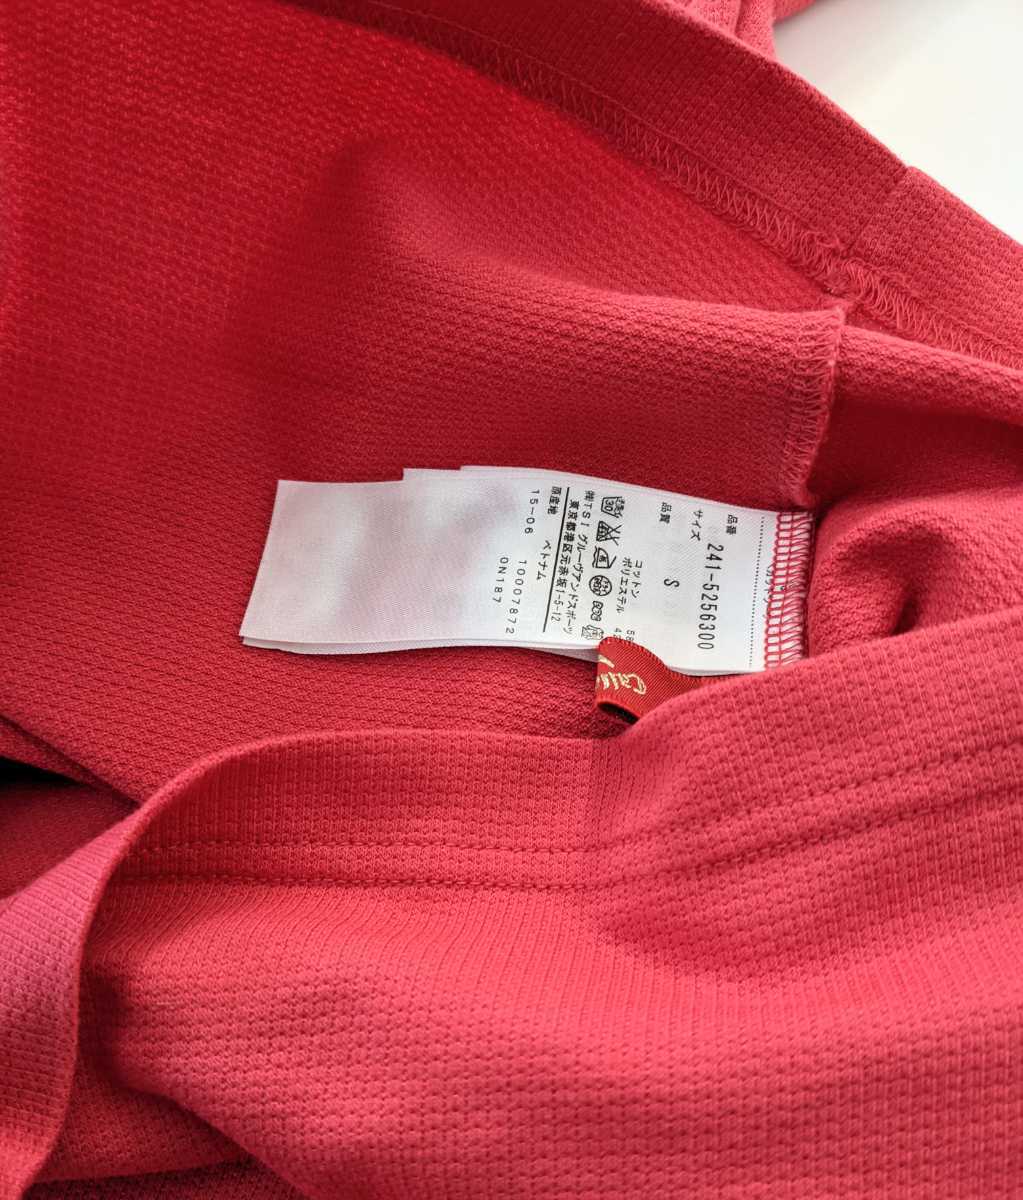 Callaway женский S Callaway Golf бренд Logo вышивка длинный рукав BD рубашка-поло rose розовый бесплатная доставка 